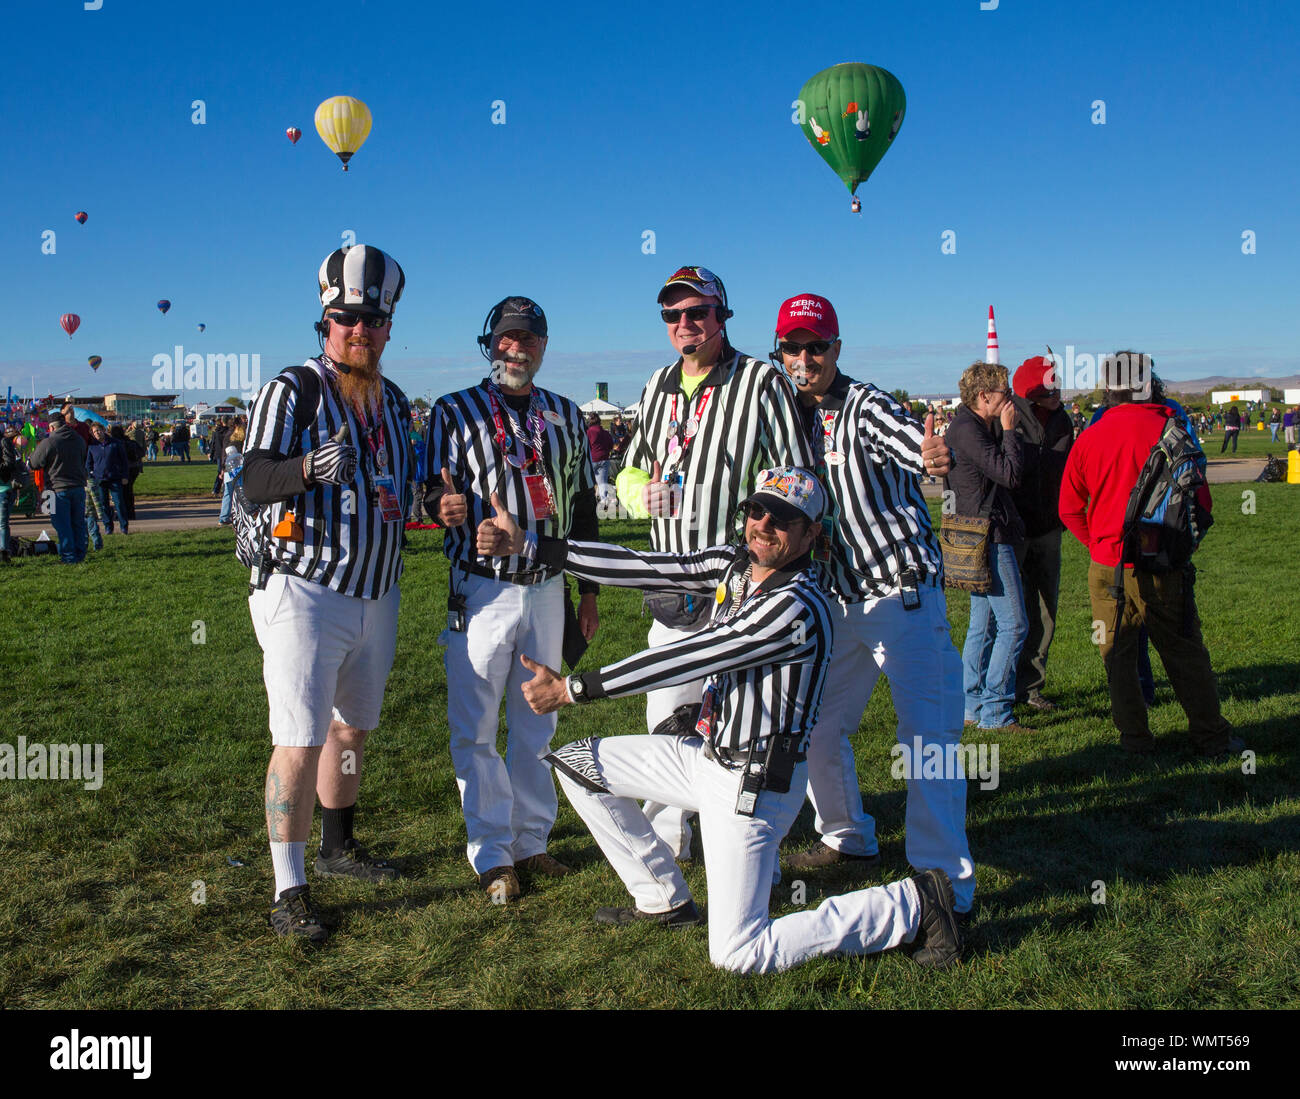 ALBUQUERQUE, NEW MEXICO - OCTOBER 2, 2016: Hot Air Balloon Festival in Albuquerque. Launch directors, also known as “zebras”. Stock Photo